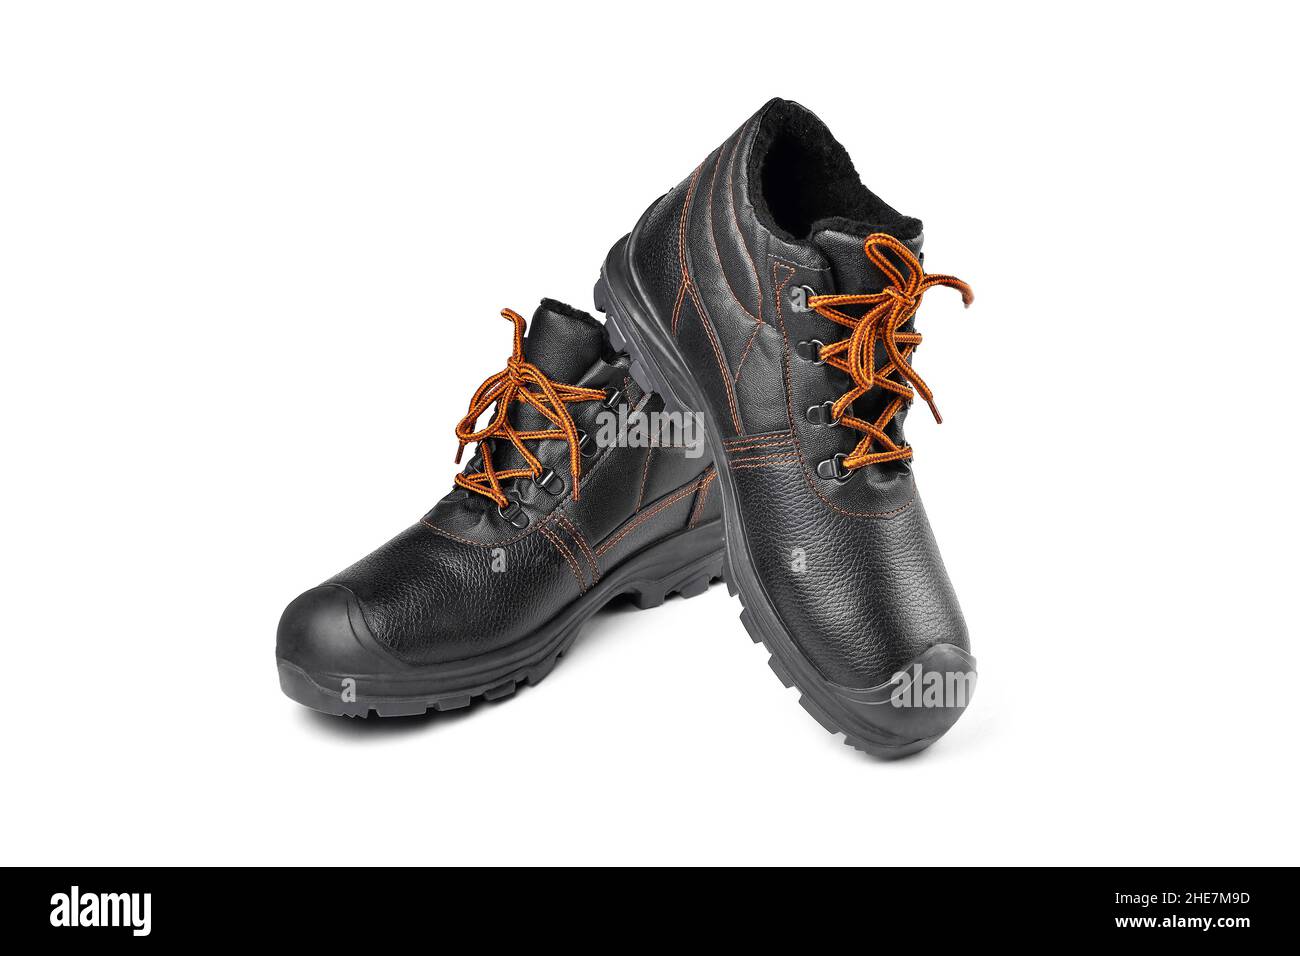 bottes chaudes noires avec lacets orange, bottes de randonnée, bottes de travail chaudes, chaussures pour hommes, fond blanc gros plan sélectif Banque D'Images